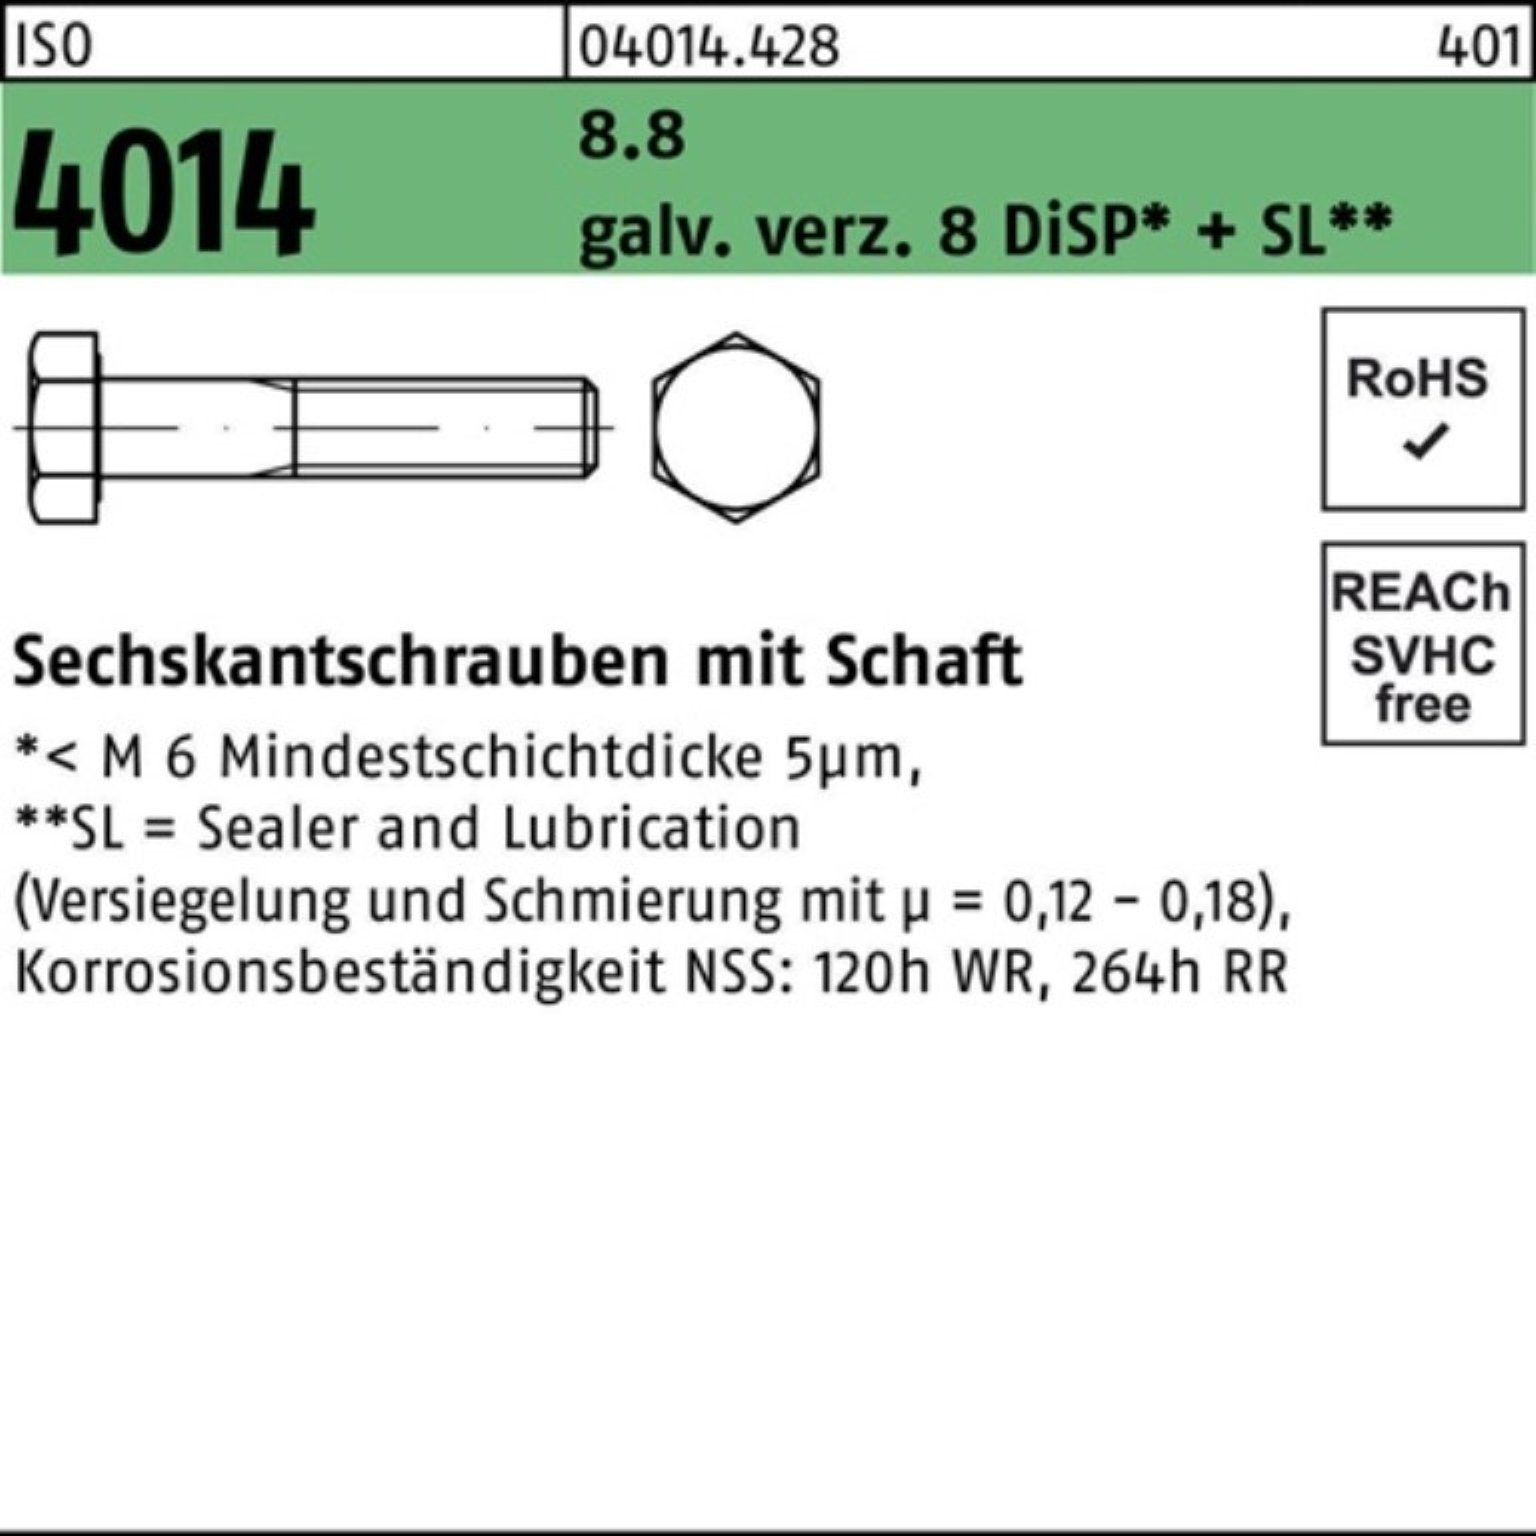 Bufab Sechskantschraube 100er Pack Sechskantschraube ISO 4014 Schaft M24x120 8.8 galv.verz. 8